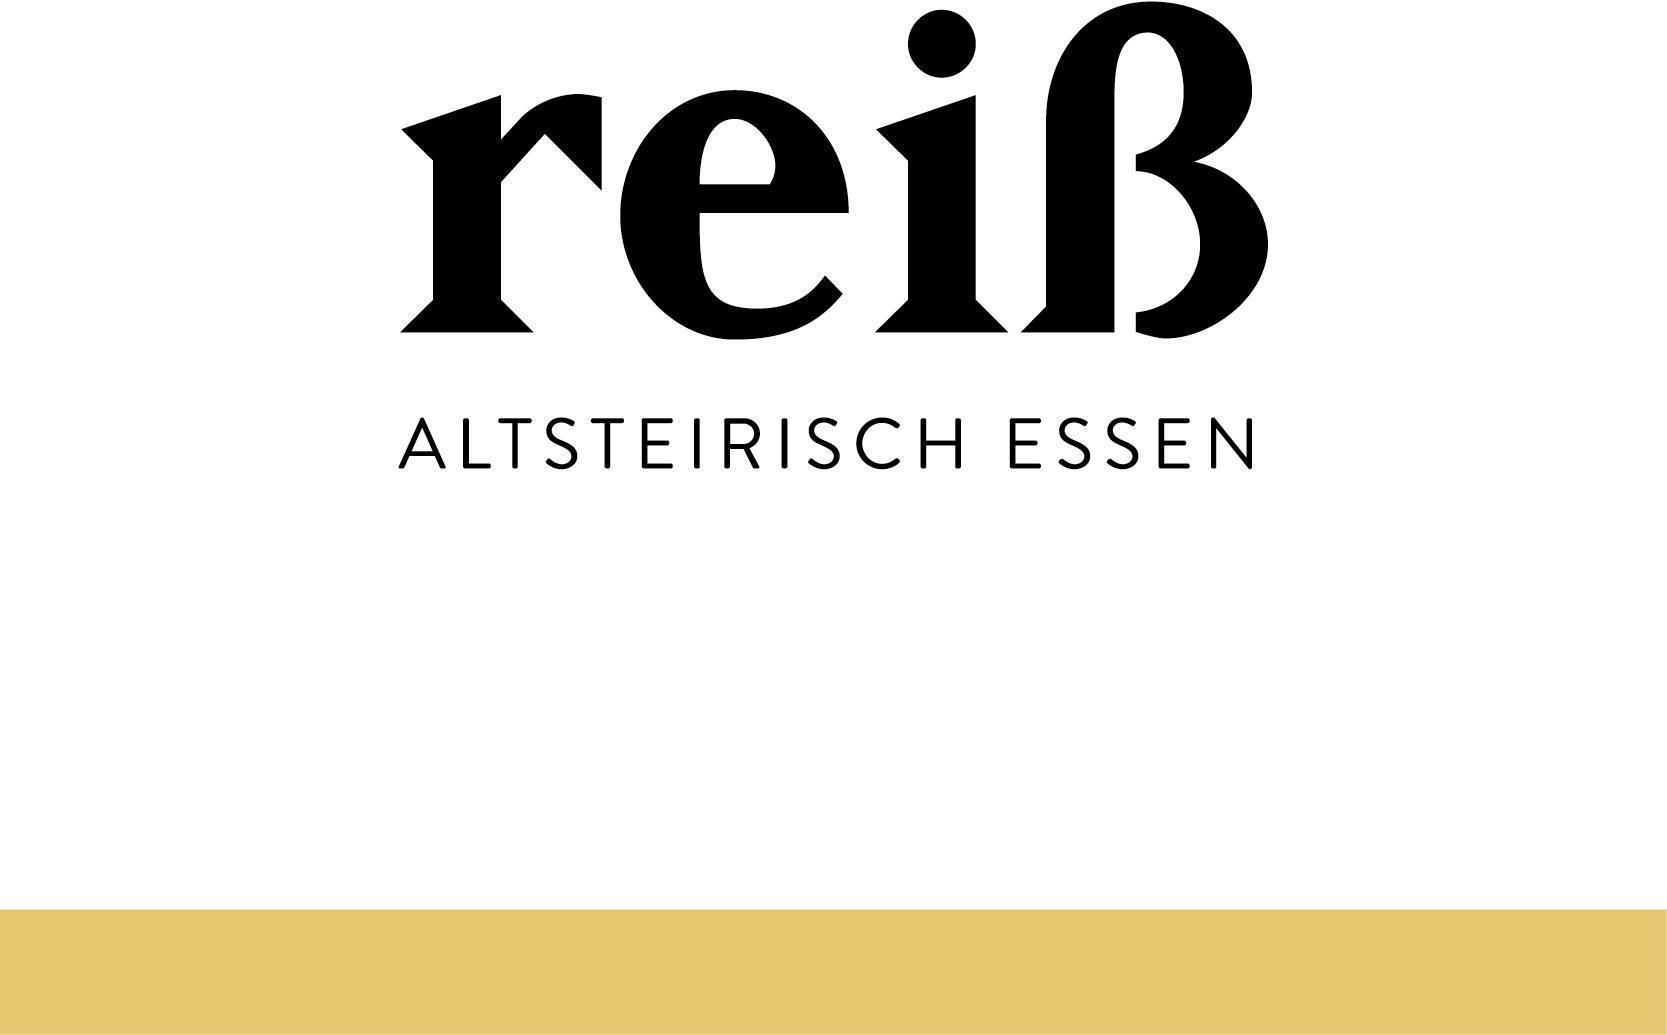 Logo Reiss Heuriger